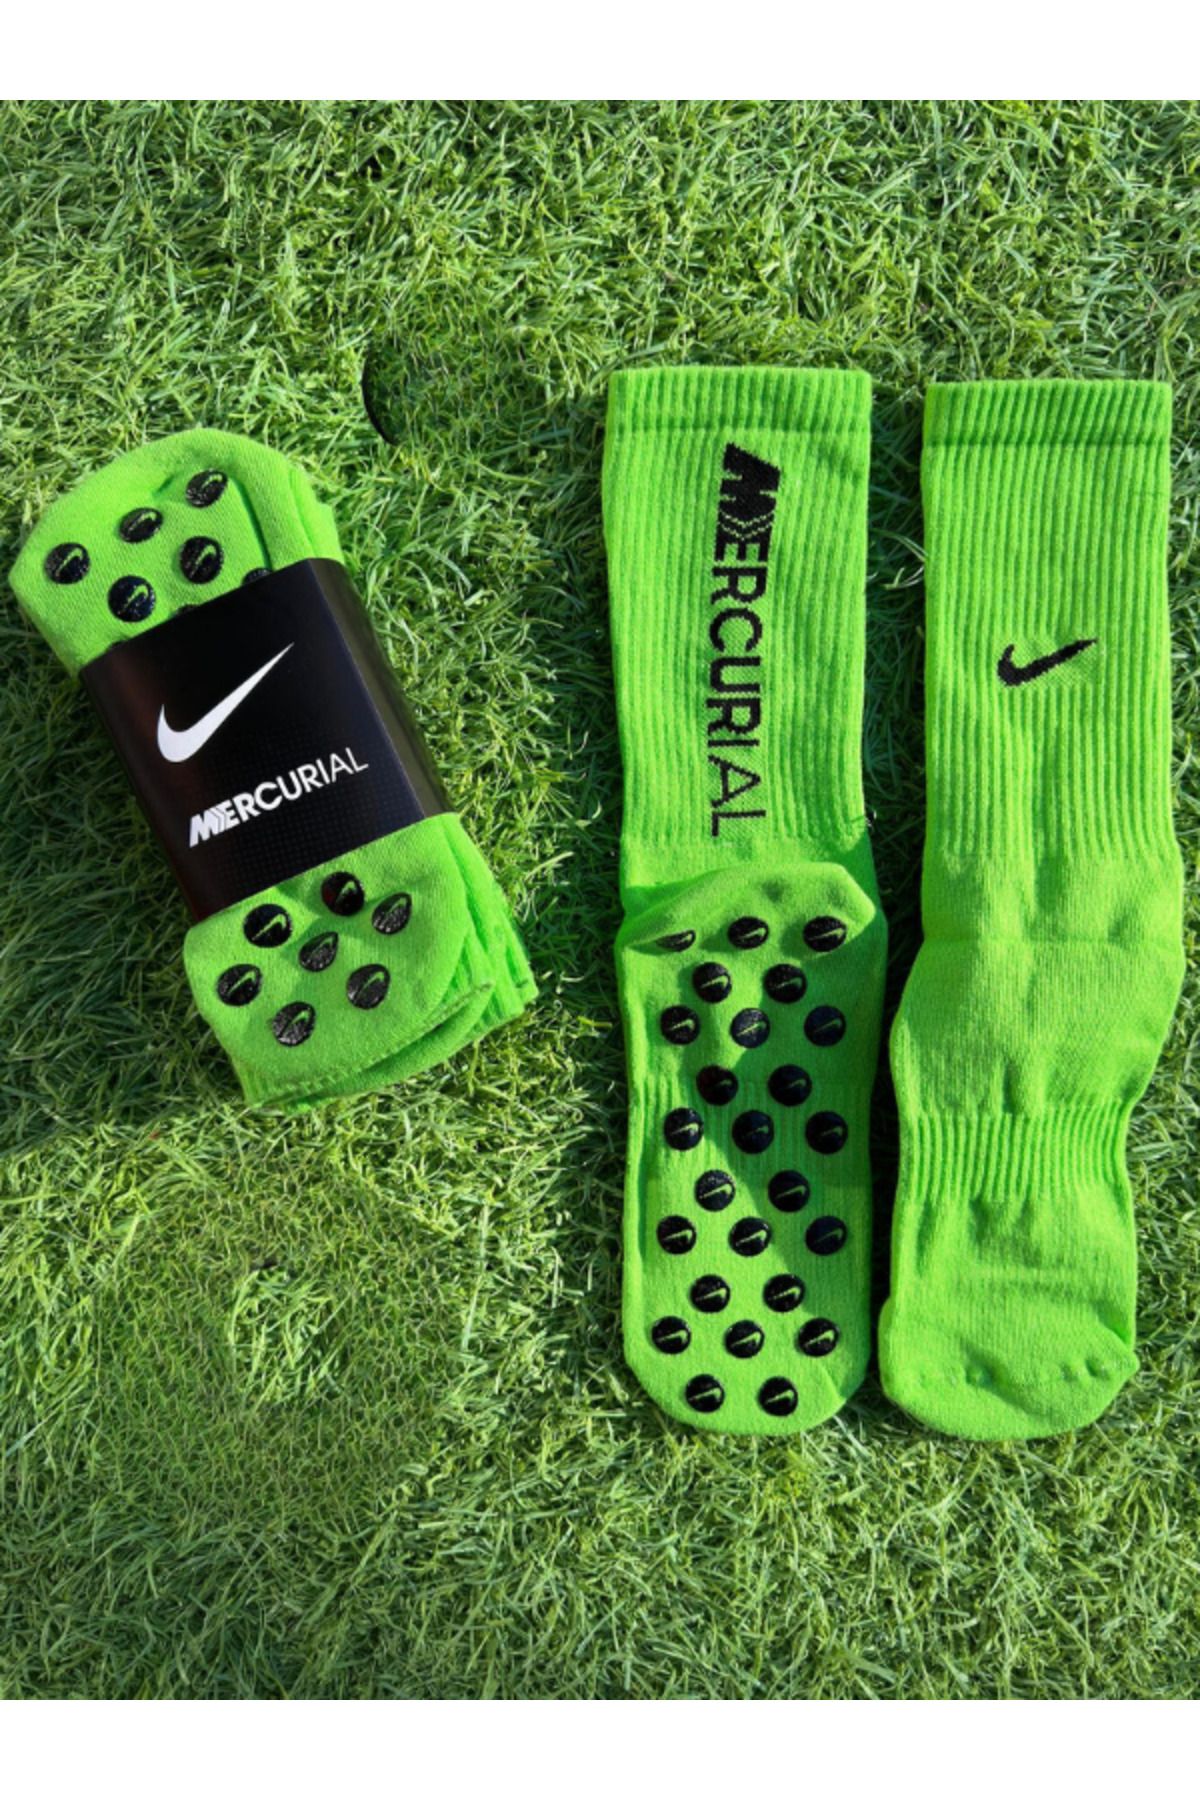 Shuttle Park İthal Özel Sporcu Anti Slip Socks Kaymaz Silikon Havlu Taban Dikişsiz Maç Sporcu Çorabı